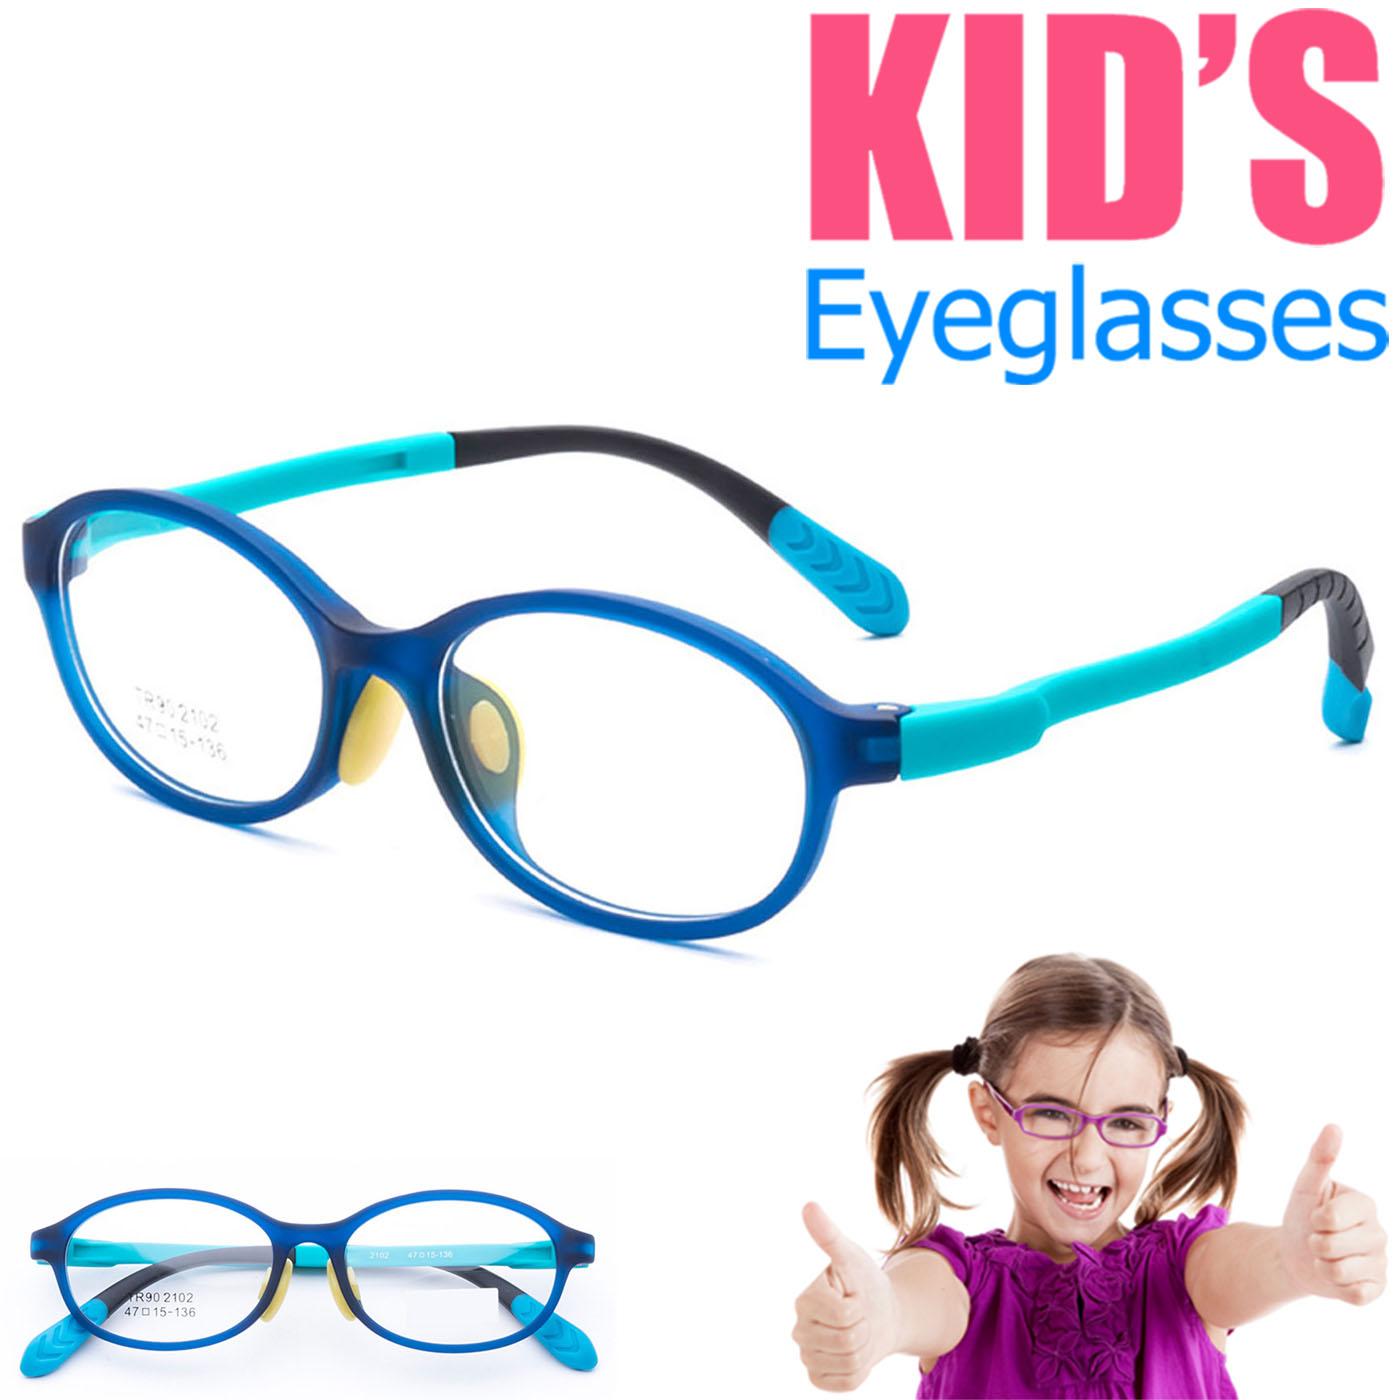 แว่นตาเกาหลีเด็ก Fashion Korea Children แว่นตาเด็ก รุ่น 2102 C-3 สีฟ้า กรอบแว่นตาเด็ก Oval รูปไข่แนวนอน Eyeglass baby frame ( สำหรับตัดเลนส์ ) วัสดุ TR-90 เบาและยืดหยุนได้สูง ขาข้อต่อ Kid eyewear Glasses